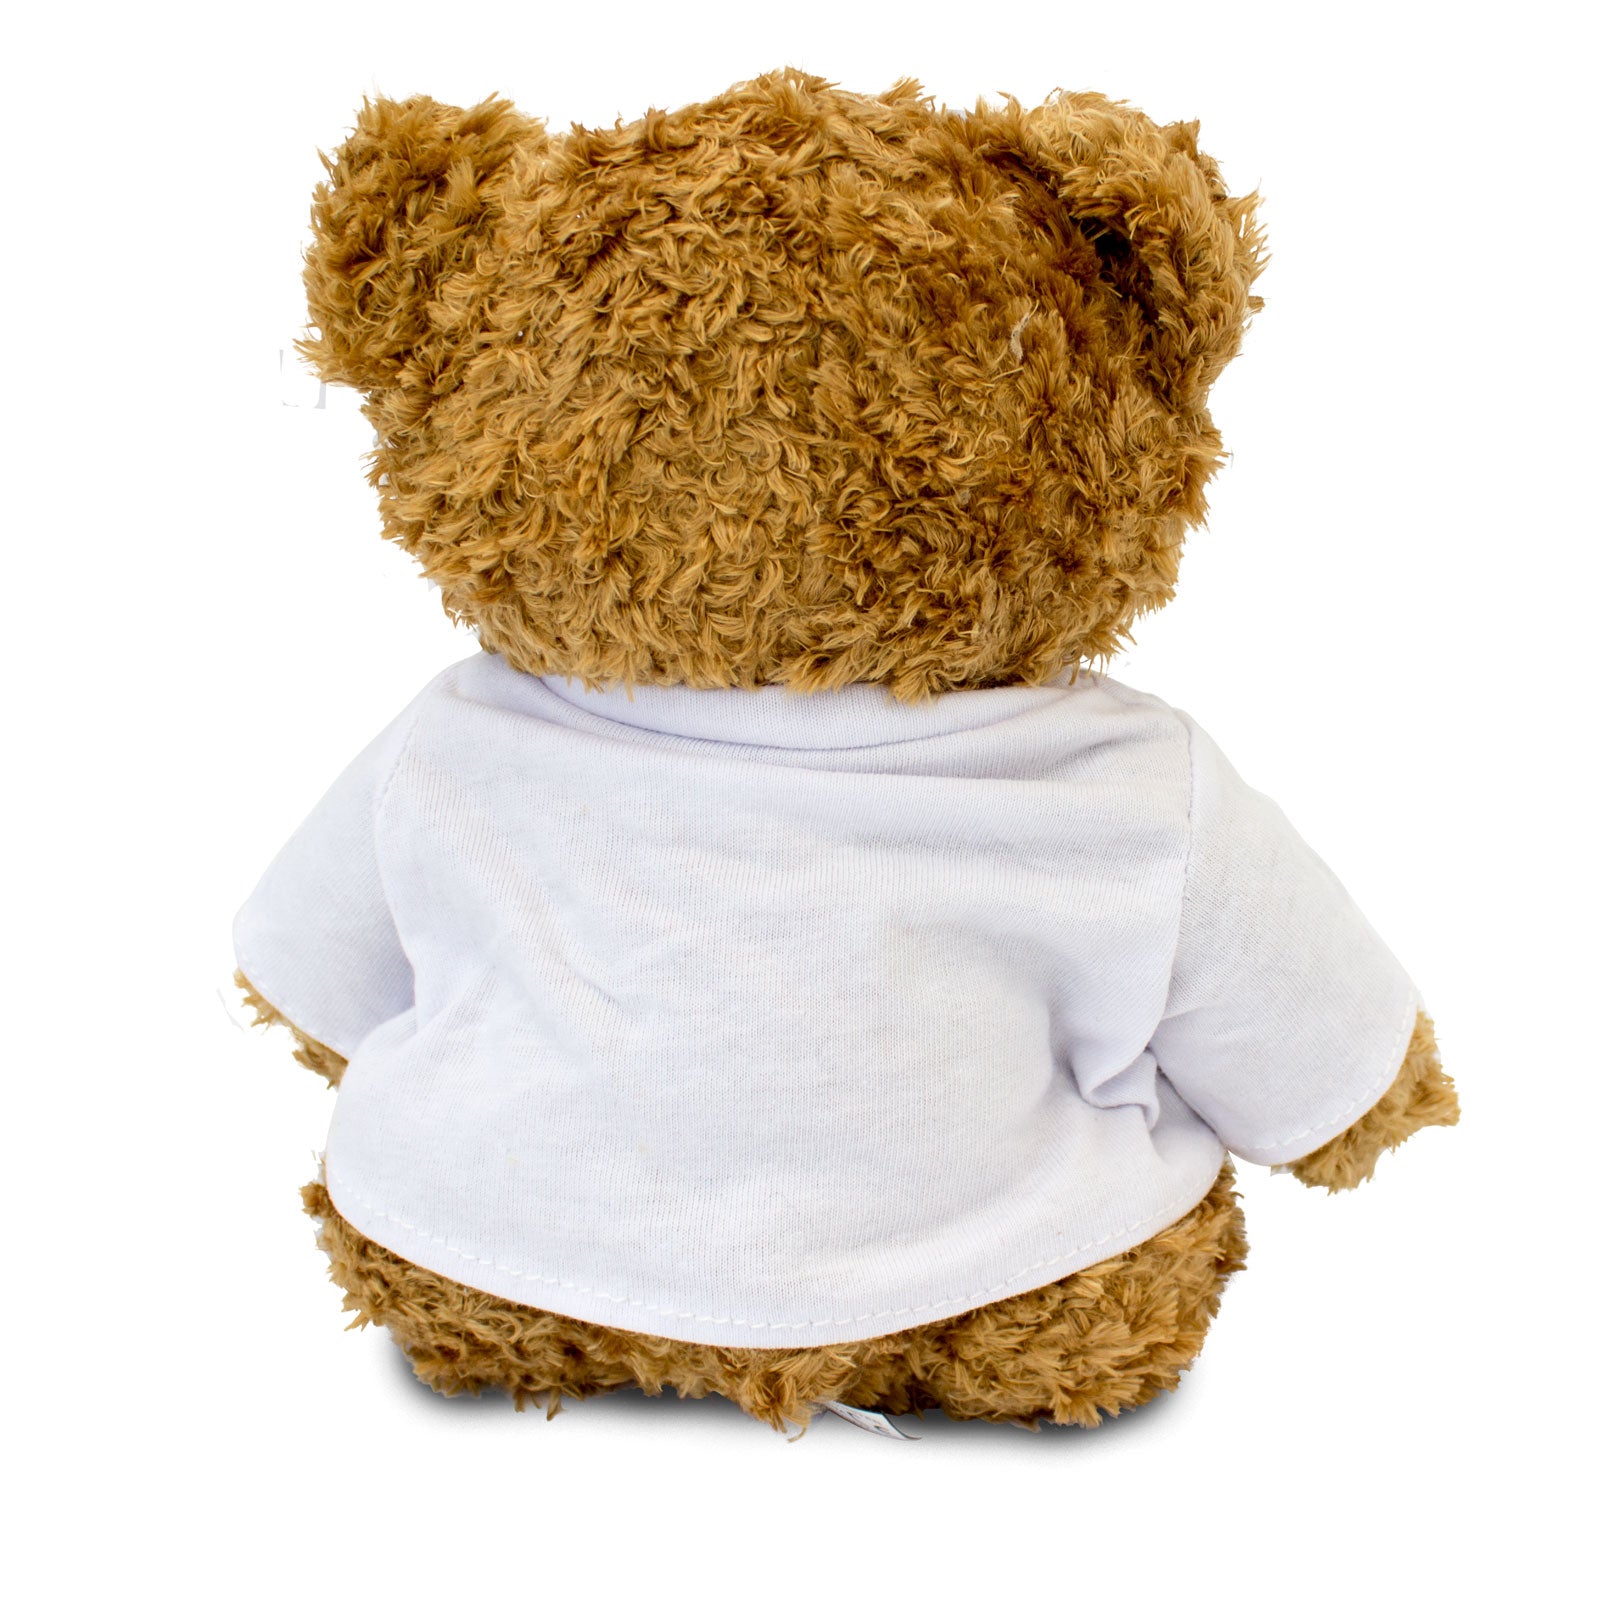 Get Well Soon Anouk - Teddy Bear